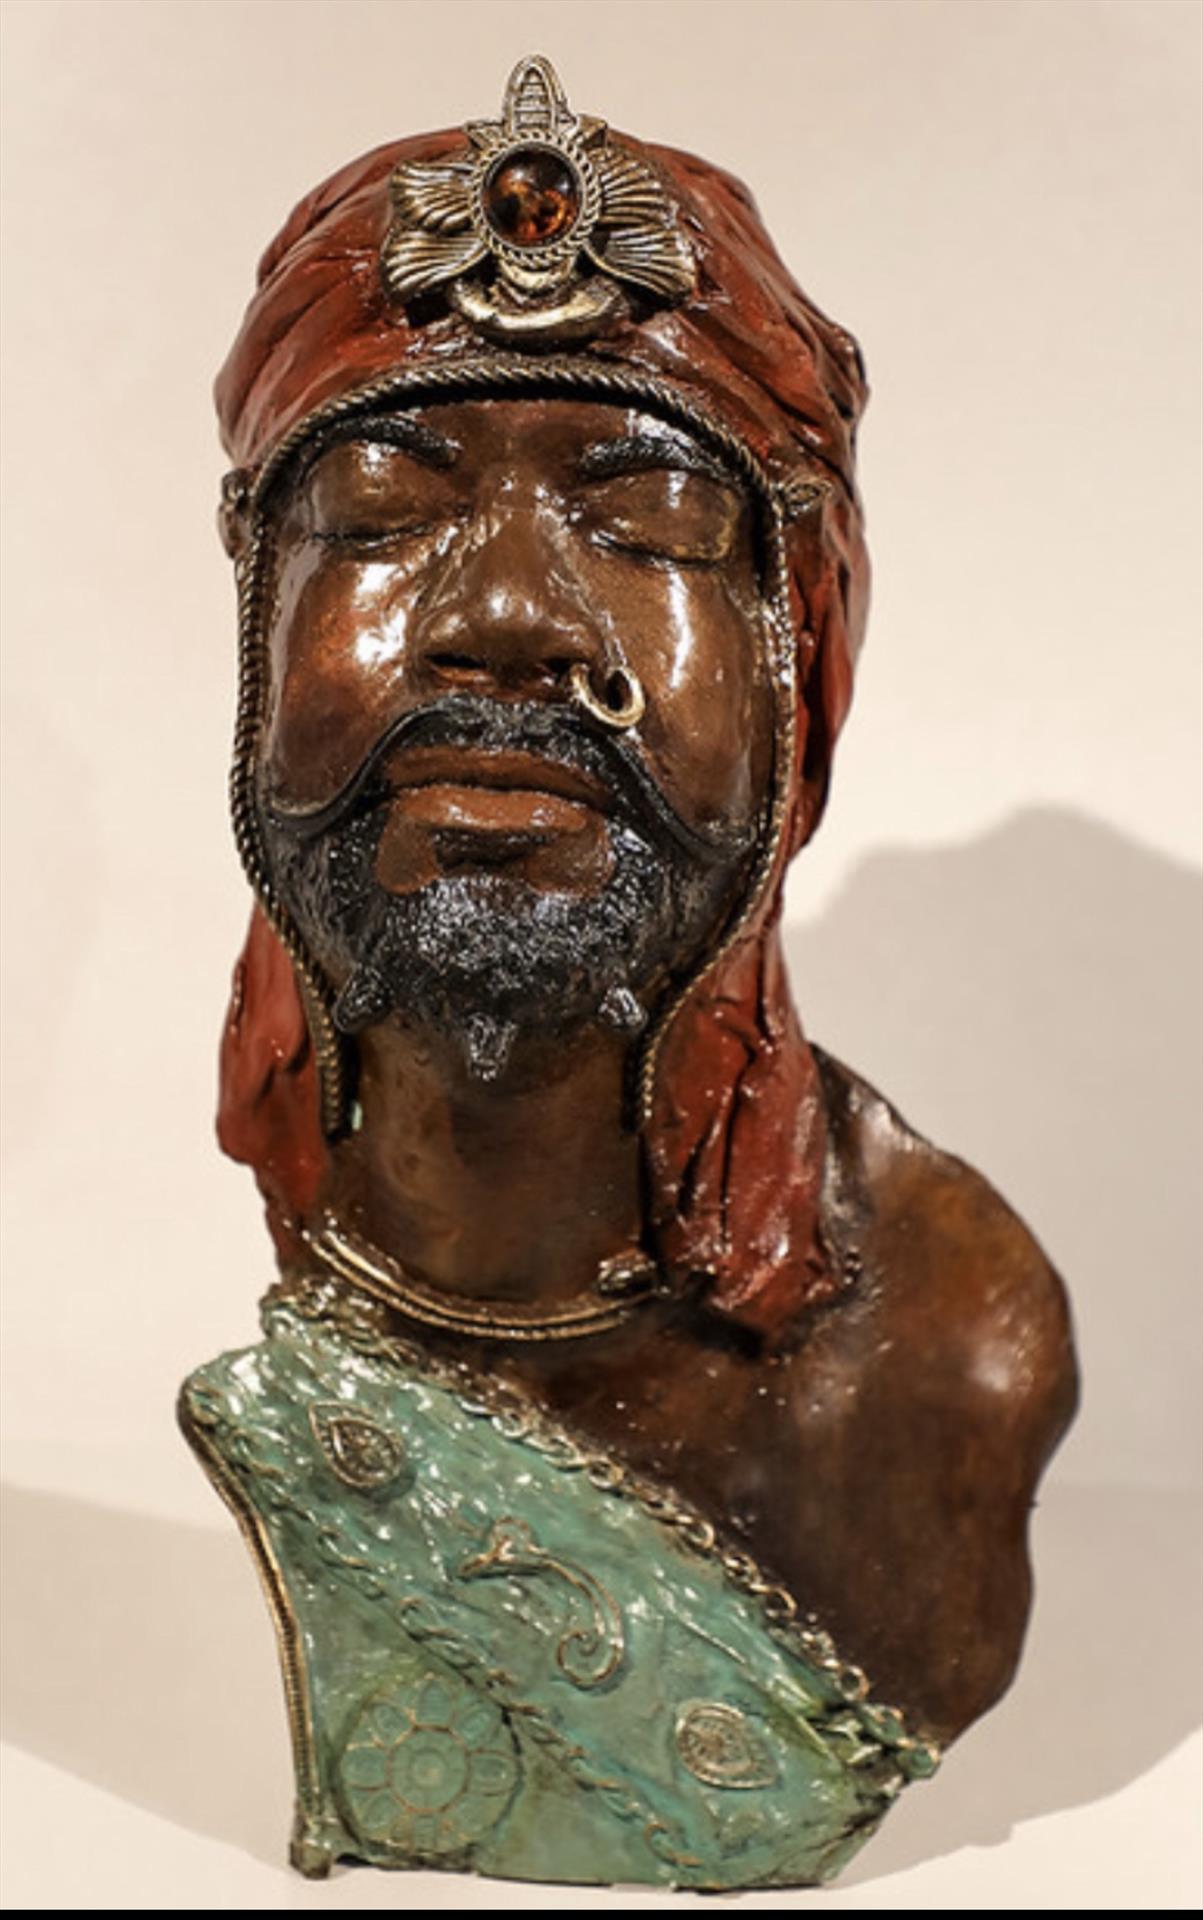 Reginald Green, Moorish King (Self Portrait). Bronze, 19x13x10.